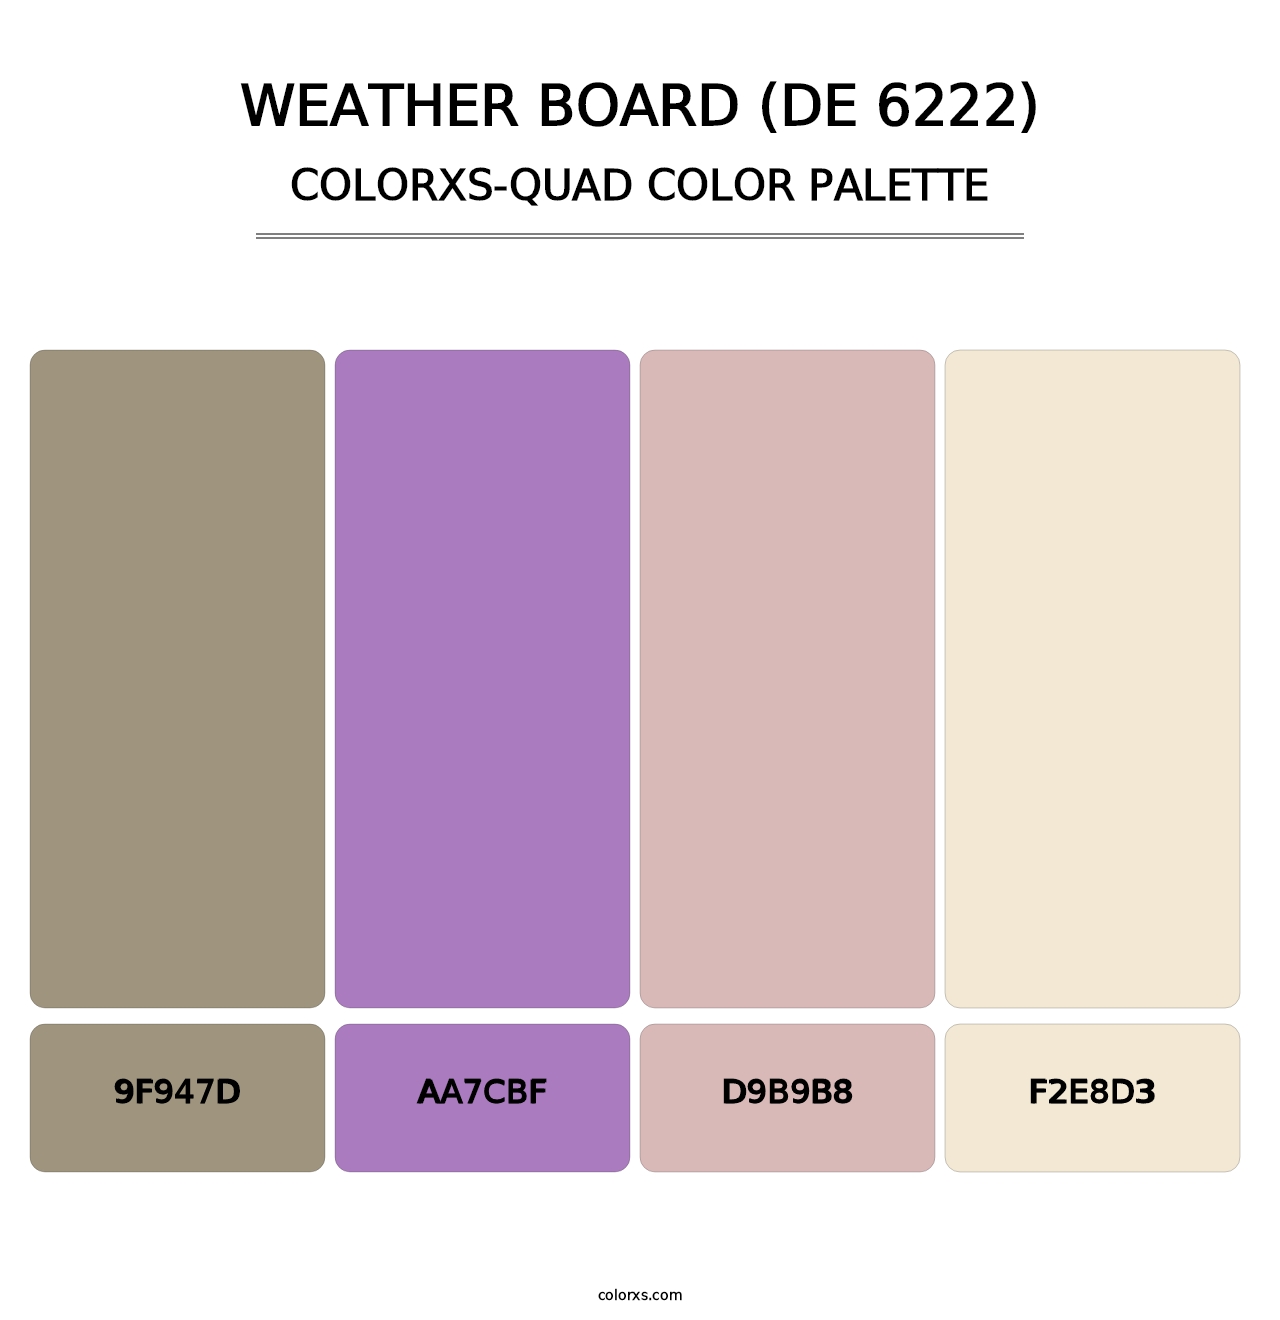 Weather Board (DE 6222) - Colorxs Quad Palette